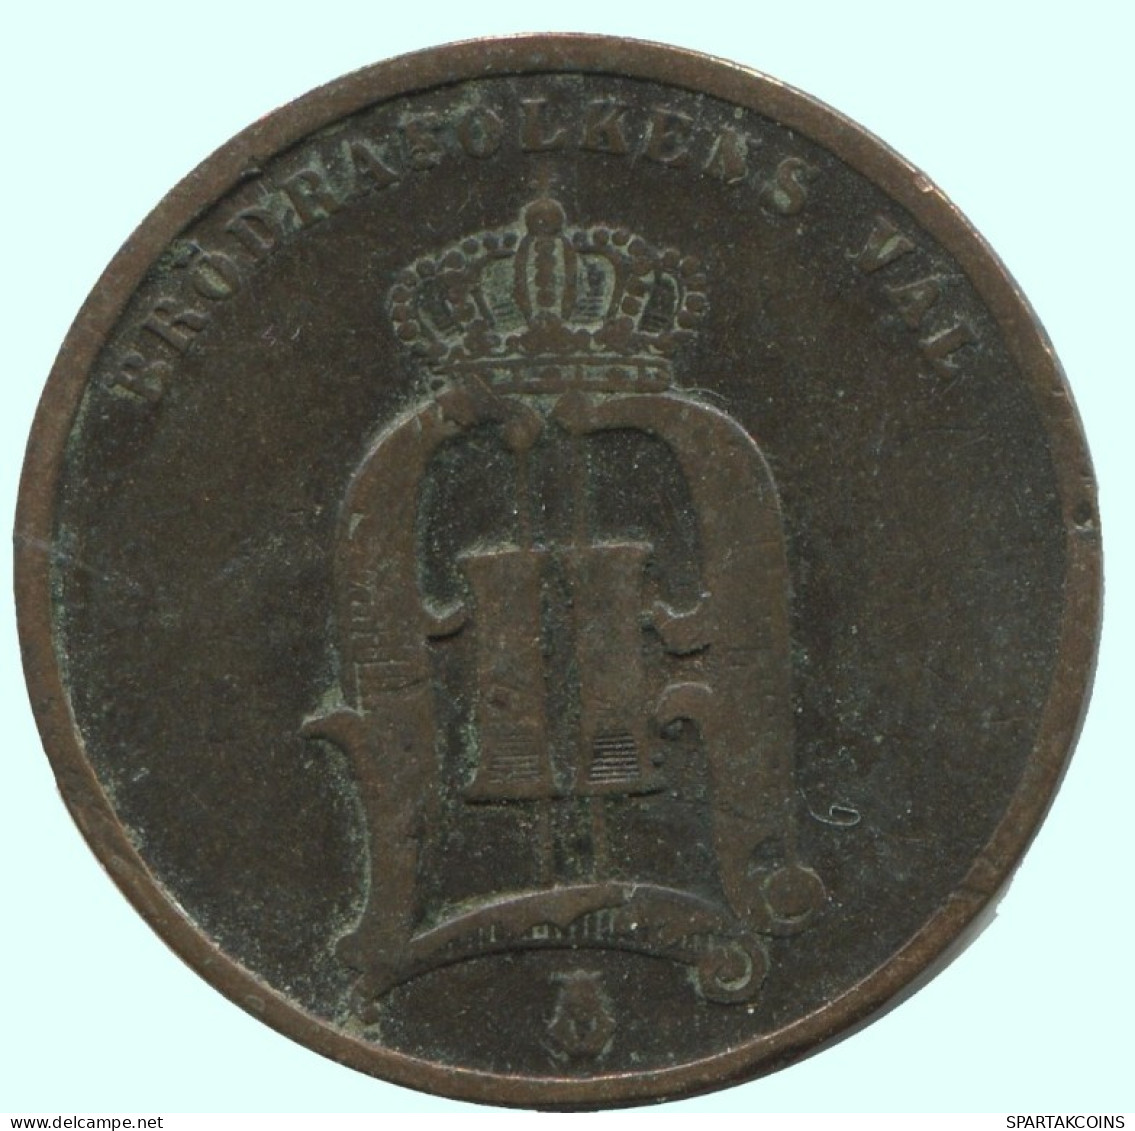 2 ORE 1875 SWEDEN Coin #AC863.2.U.A - Suède